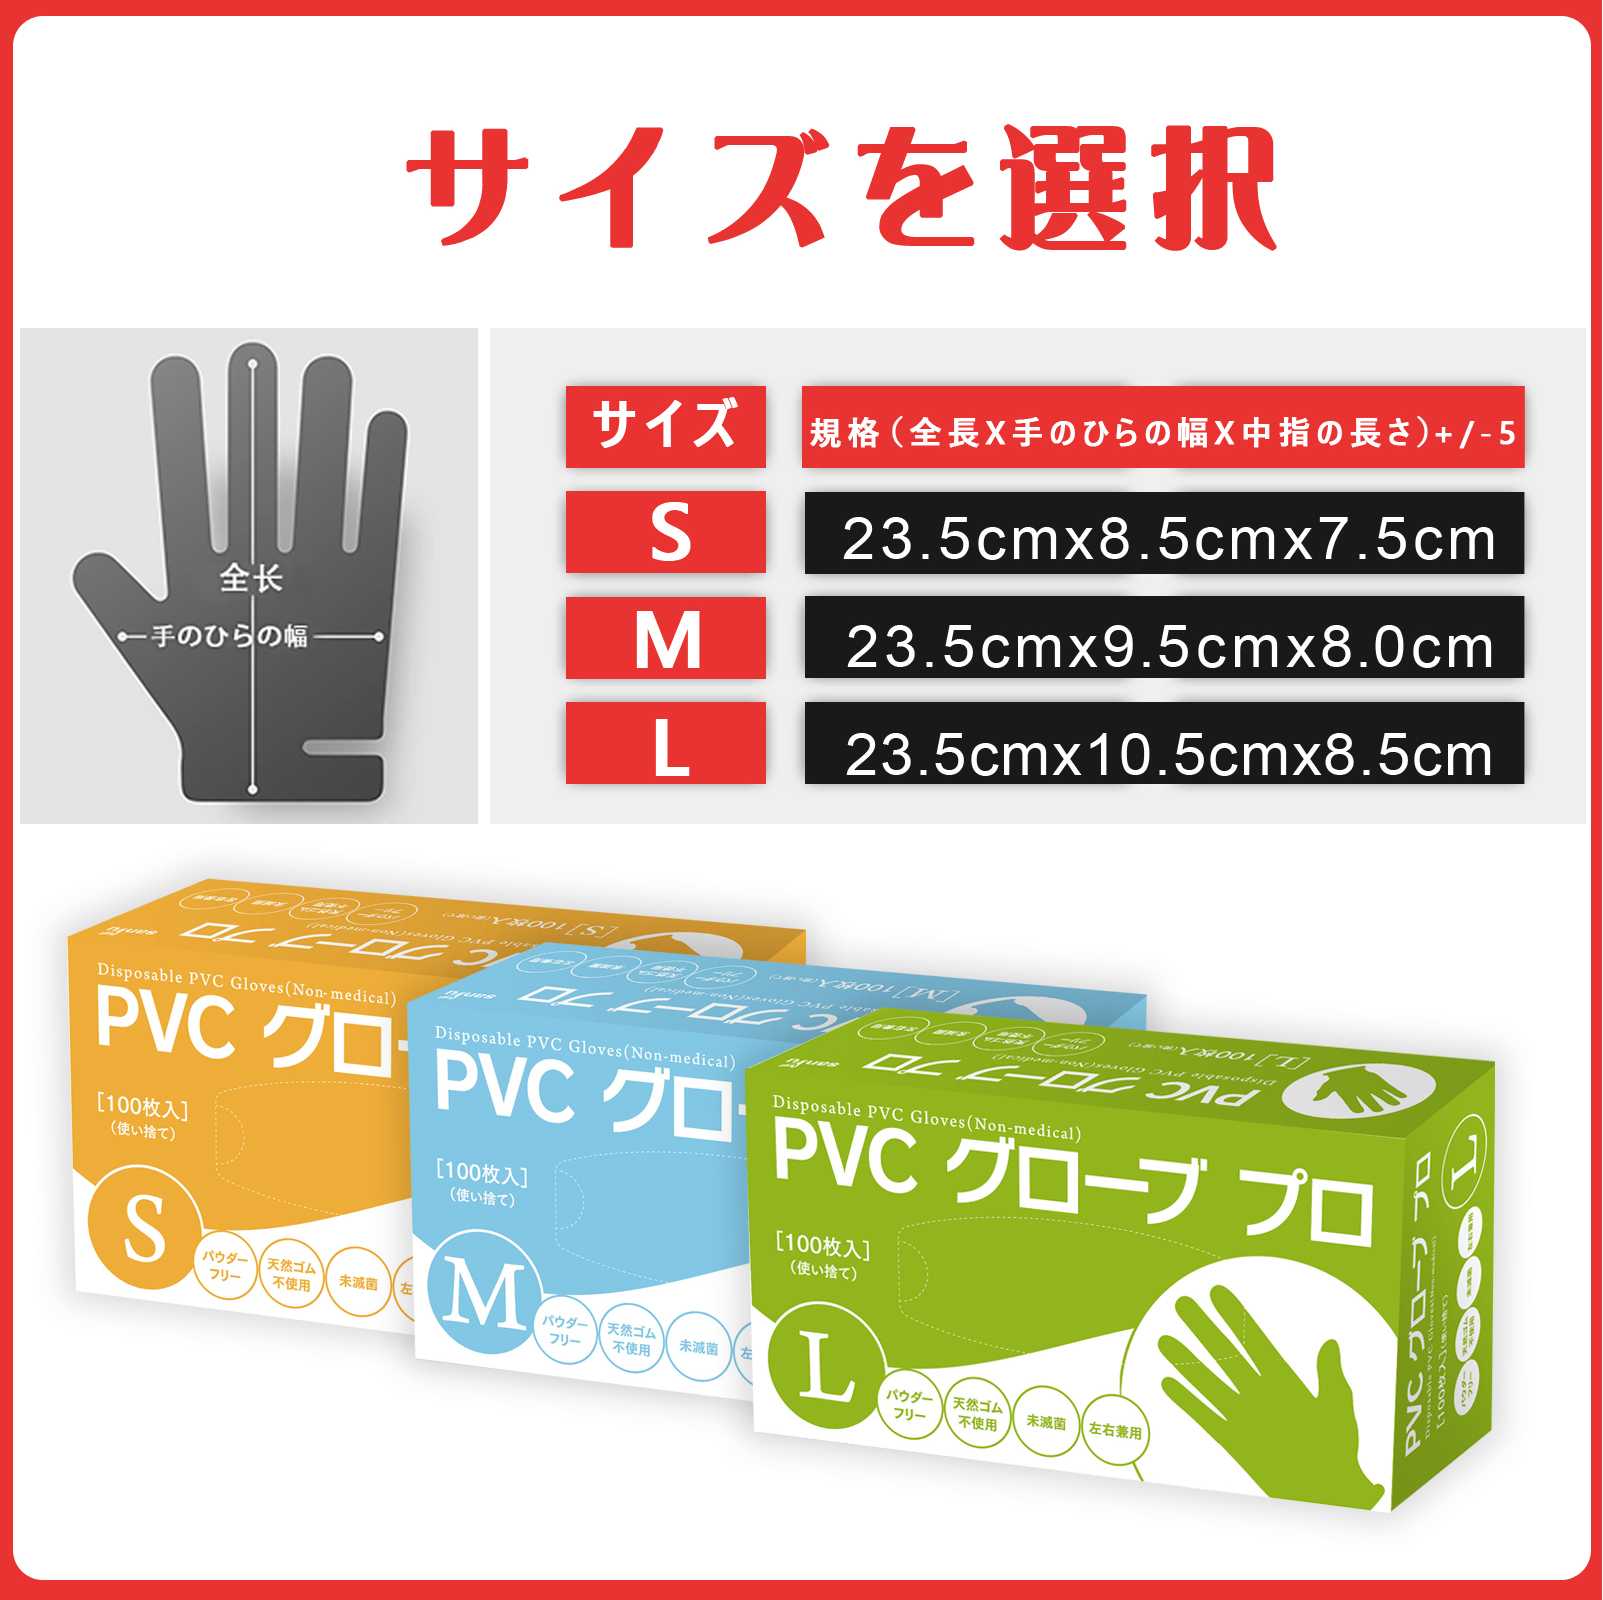 PVCグローブ 100枚 安値挑戦中 pvc手袋 s m l ビニール手袋 